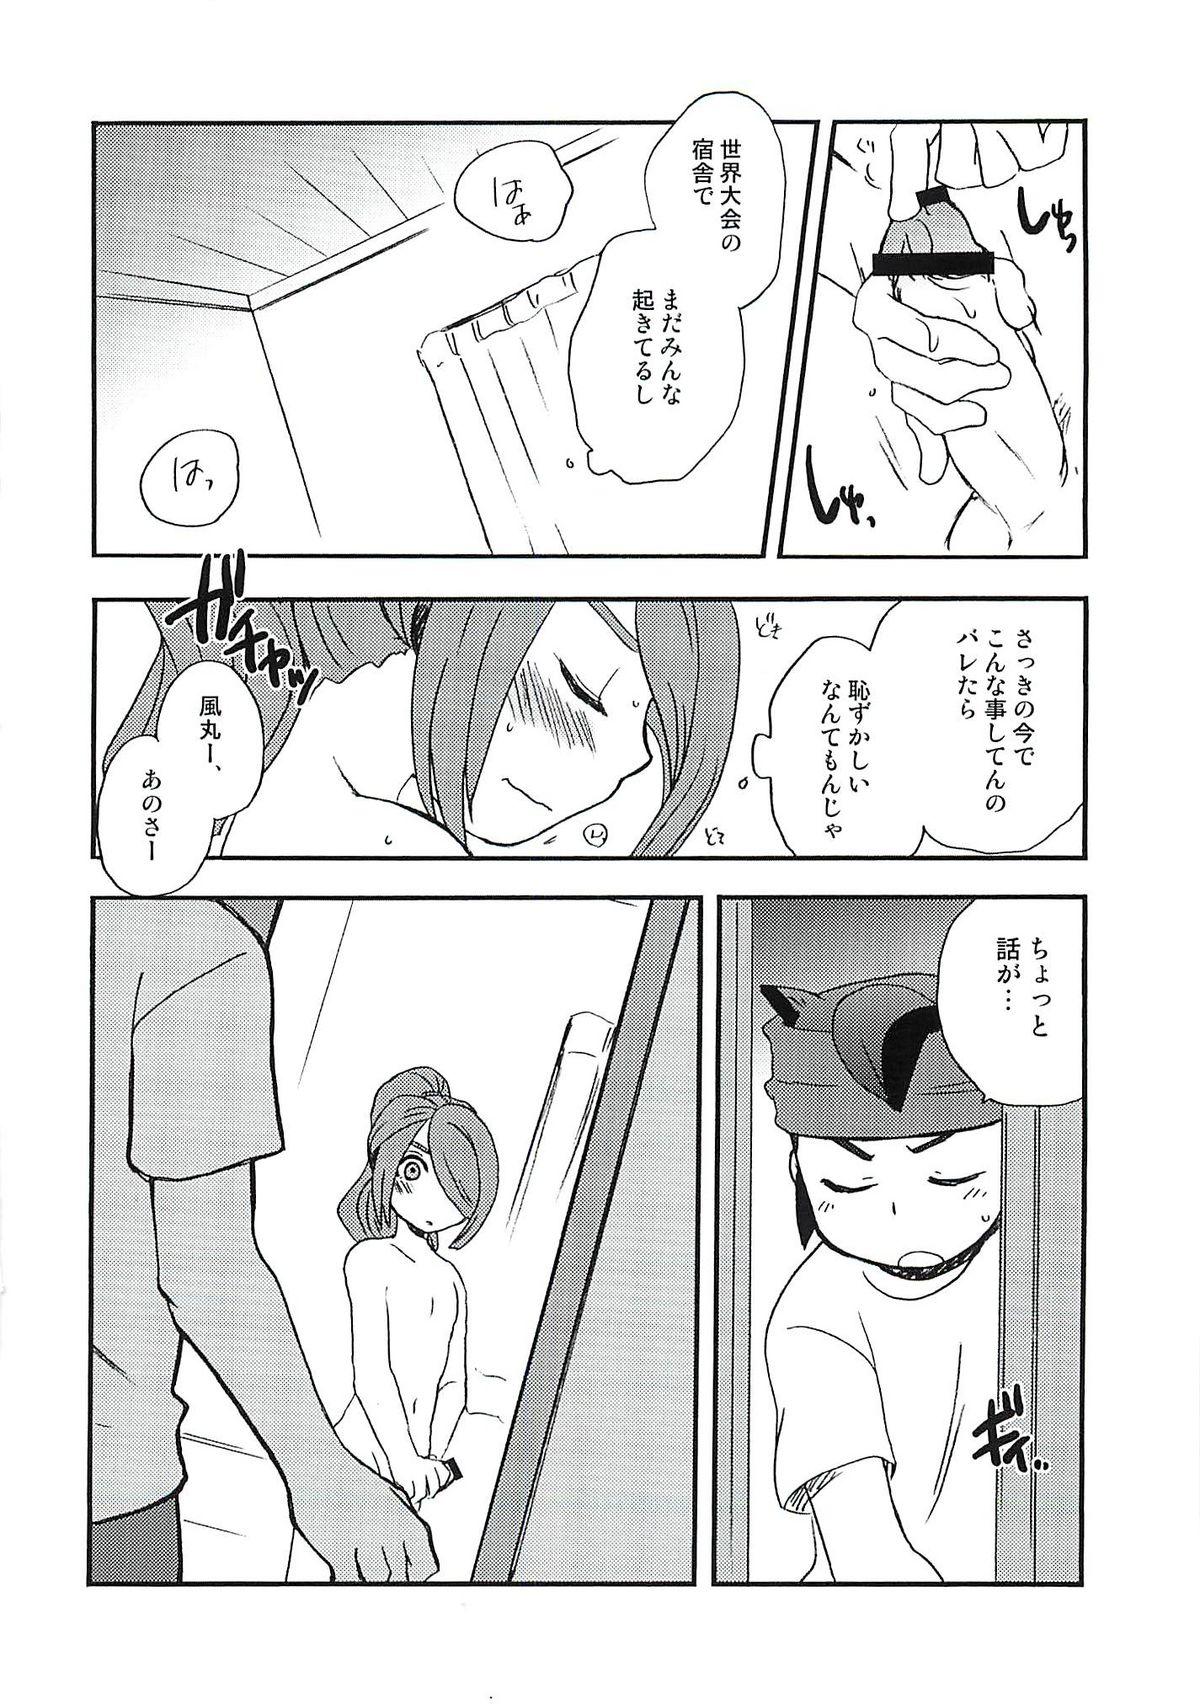 Macho 07/21 - Inazuma eleven Suck - Page 11